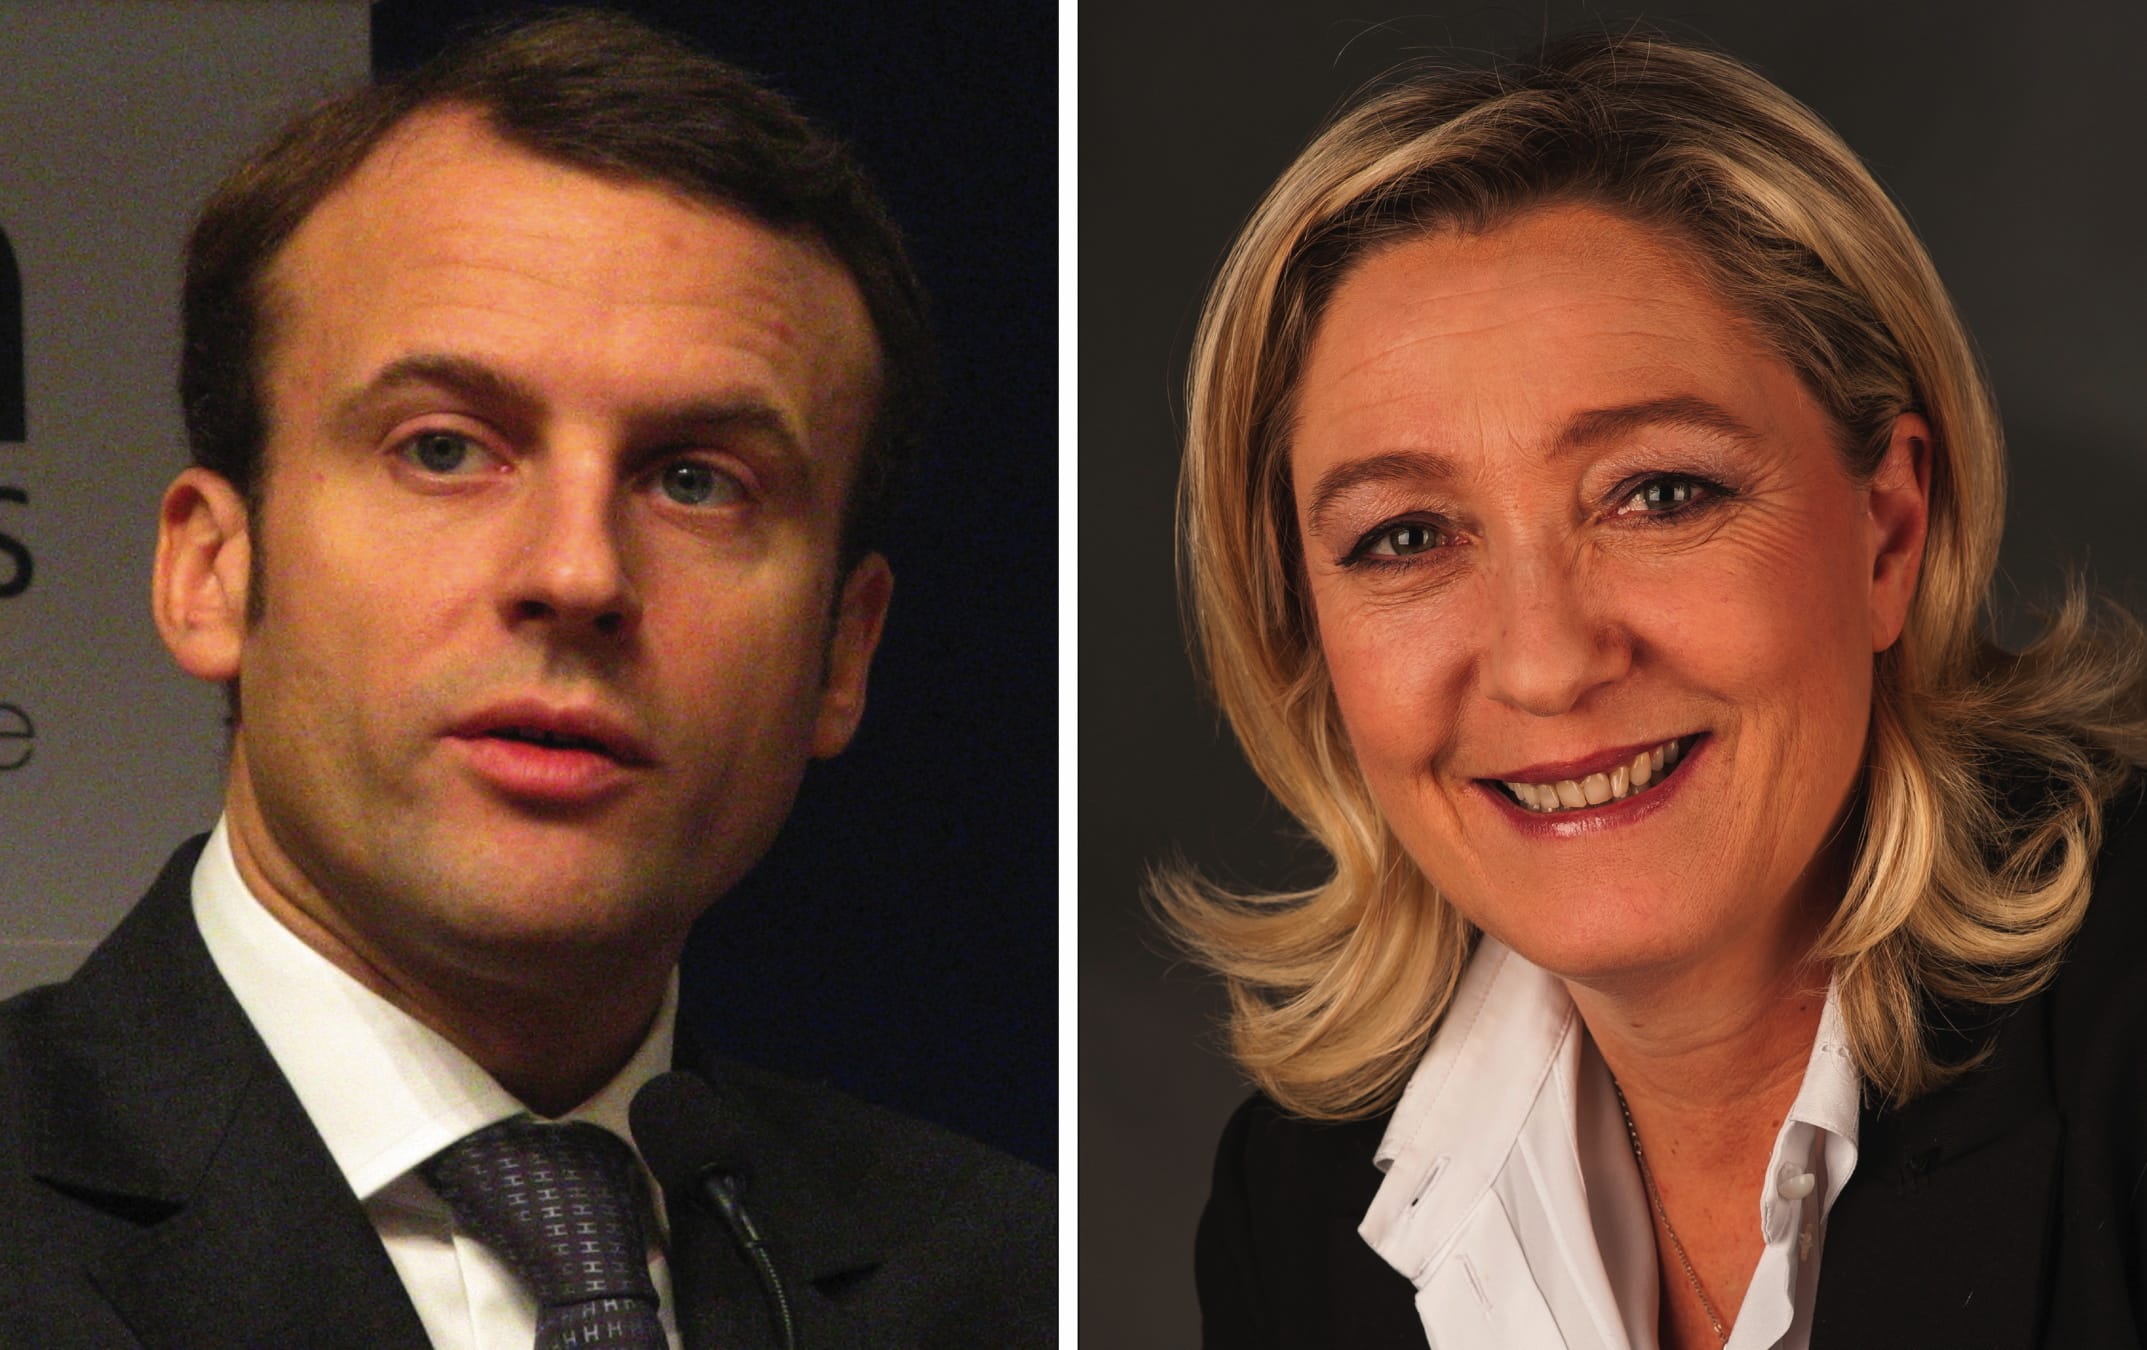 https://commons.wikimedia.org/wiki/File:Macron_%26_Le_Pen.jpg